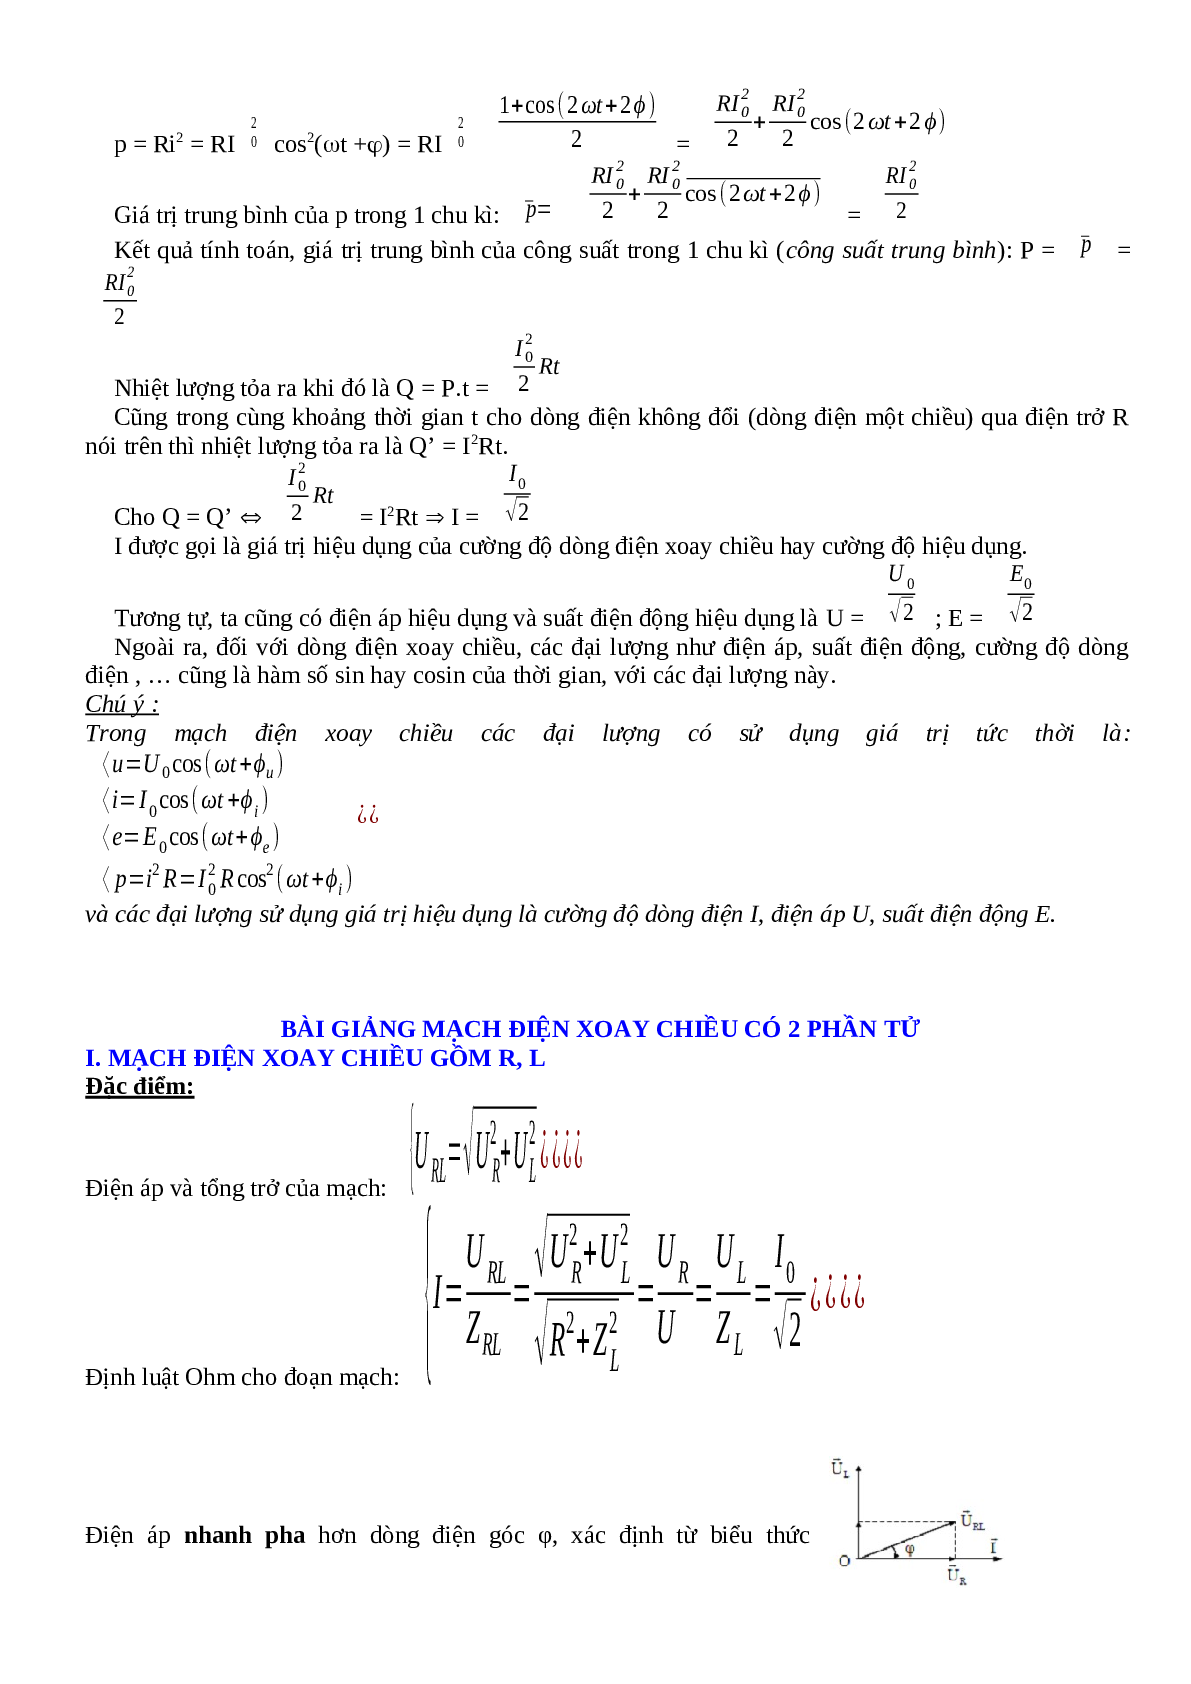 Lý thuyết, bài tập về Điện xoay chiều hay nhất - Vật lí 12 (trang 2)